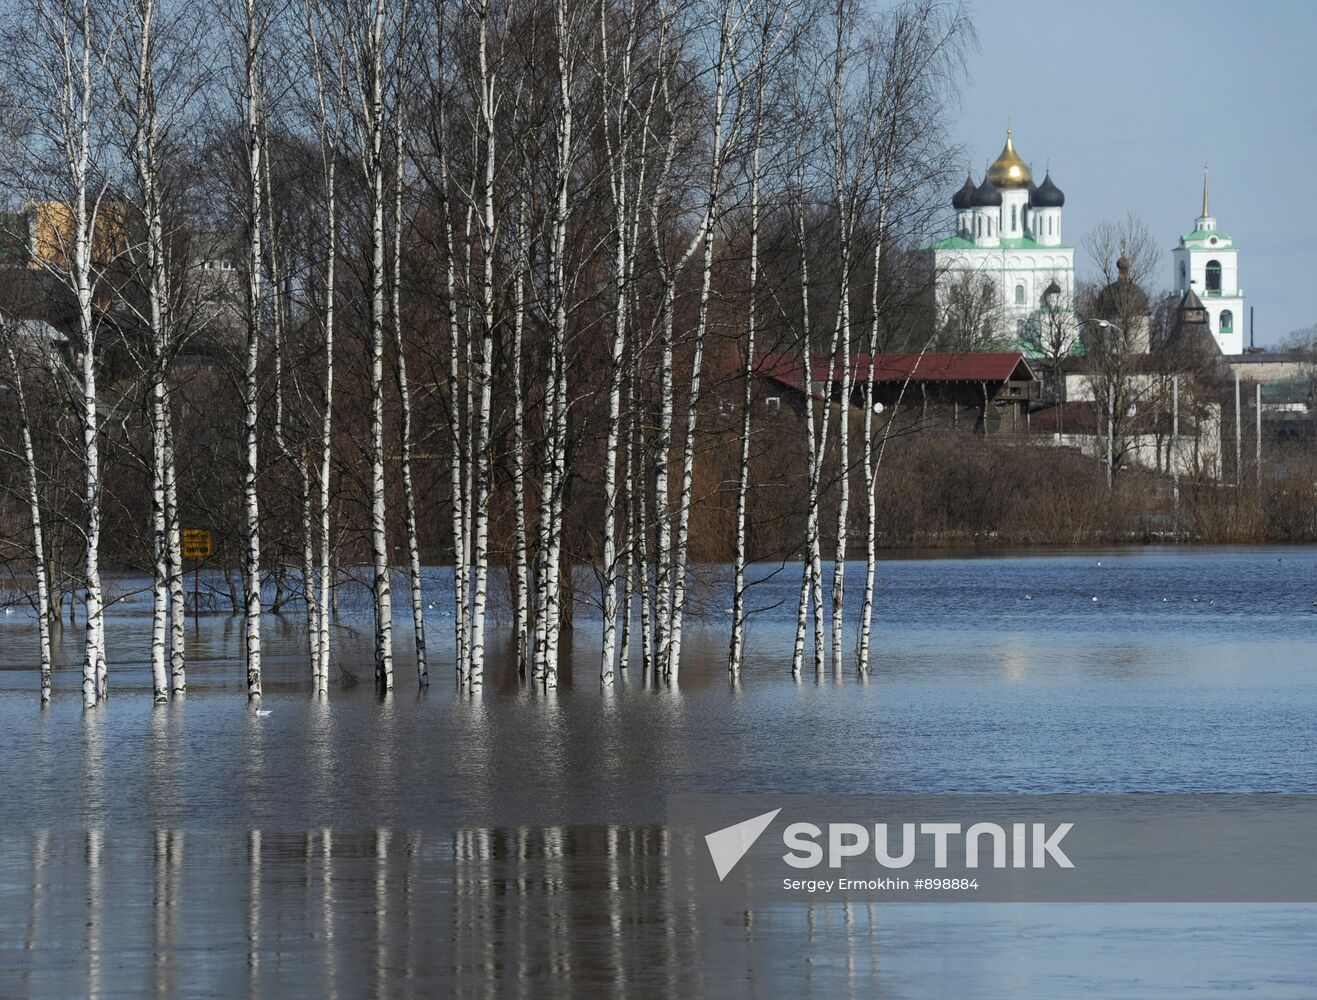 Spring flooding in Pskov